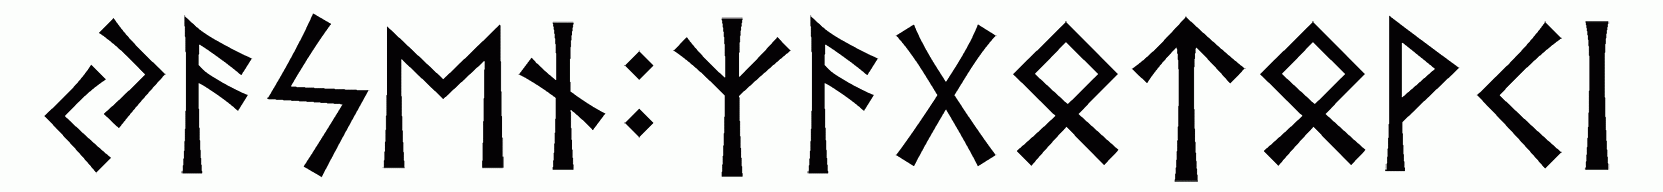 yasen+zagotovki - Напиши имя  ЯСЕНЬ+ЗАГОТОВКИ рунами  - ᛃᚨᛋᛖᚾ:ᛉᚨᚷᛟᛏᛟᚹᚲᛁ - Значение и характер имени  ЯСЕНЬ+ЗАГОТОВКИ - 